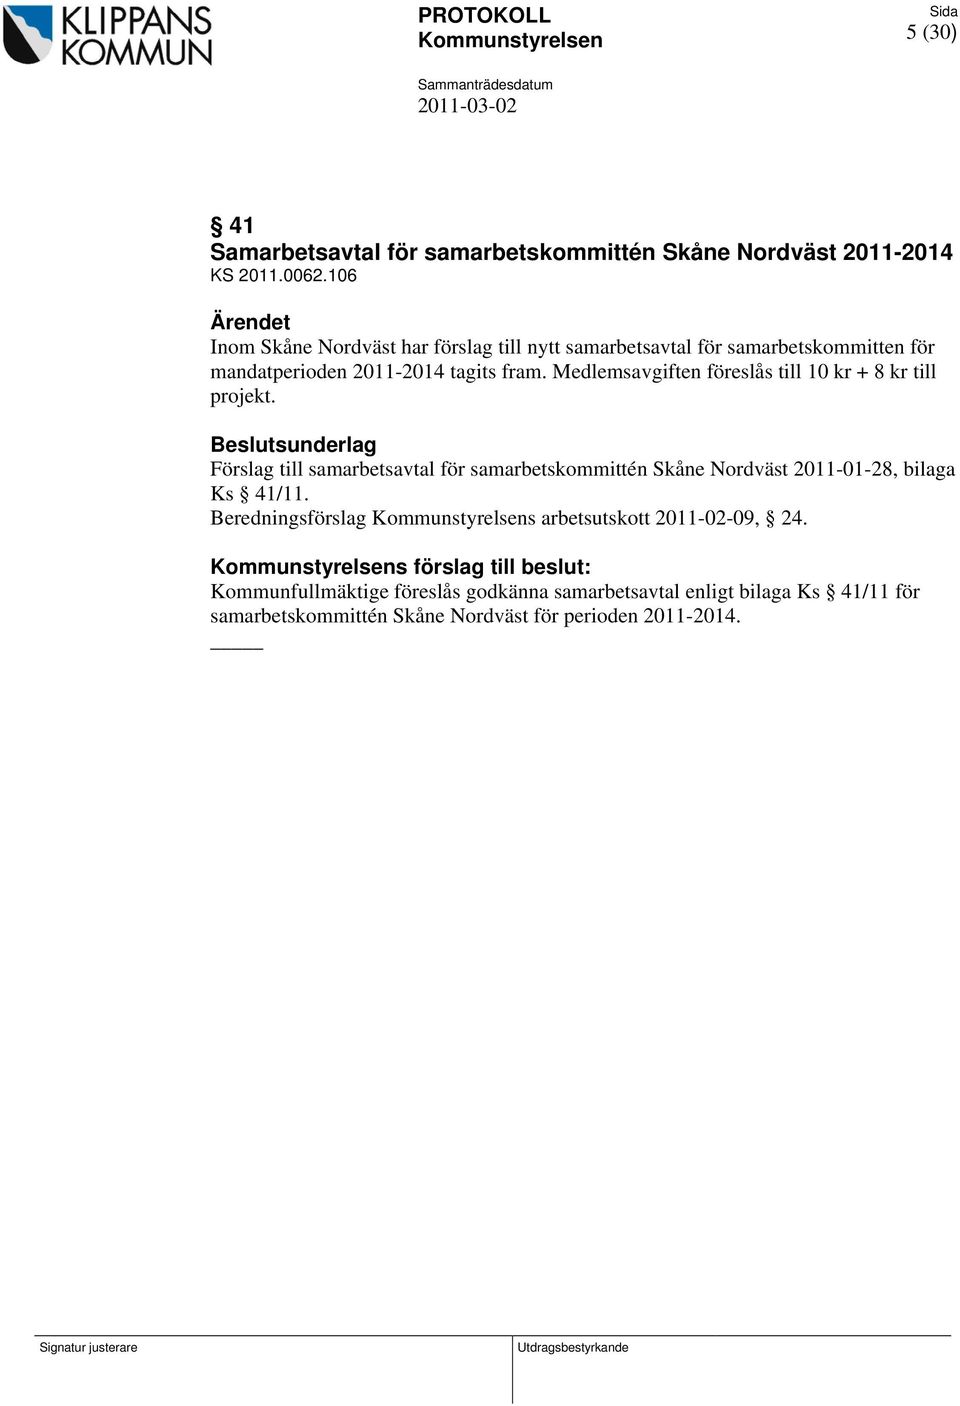 Medlemsavgiften föreslås till 10 kr + 8 kr till projekt. Beslutsunderlag Förslag till samarbetsavtal för samarbetskommittén Skåne Nordväst 2011-01-28, bilaga Ks 41/11.